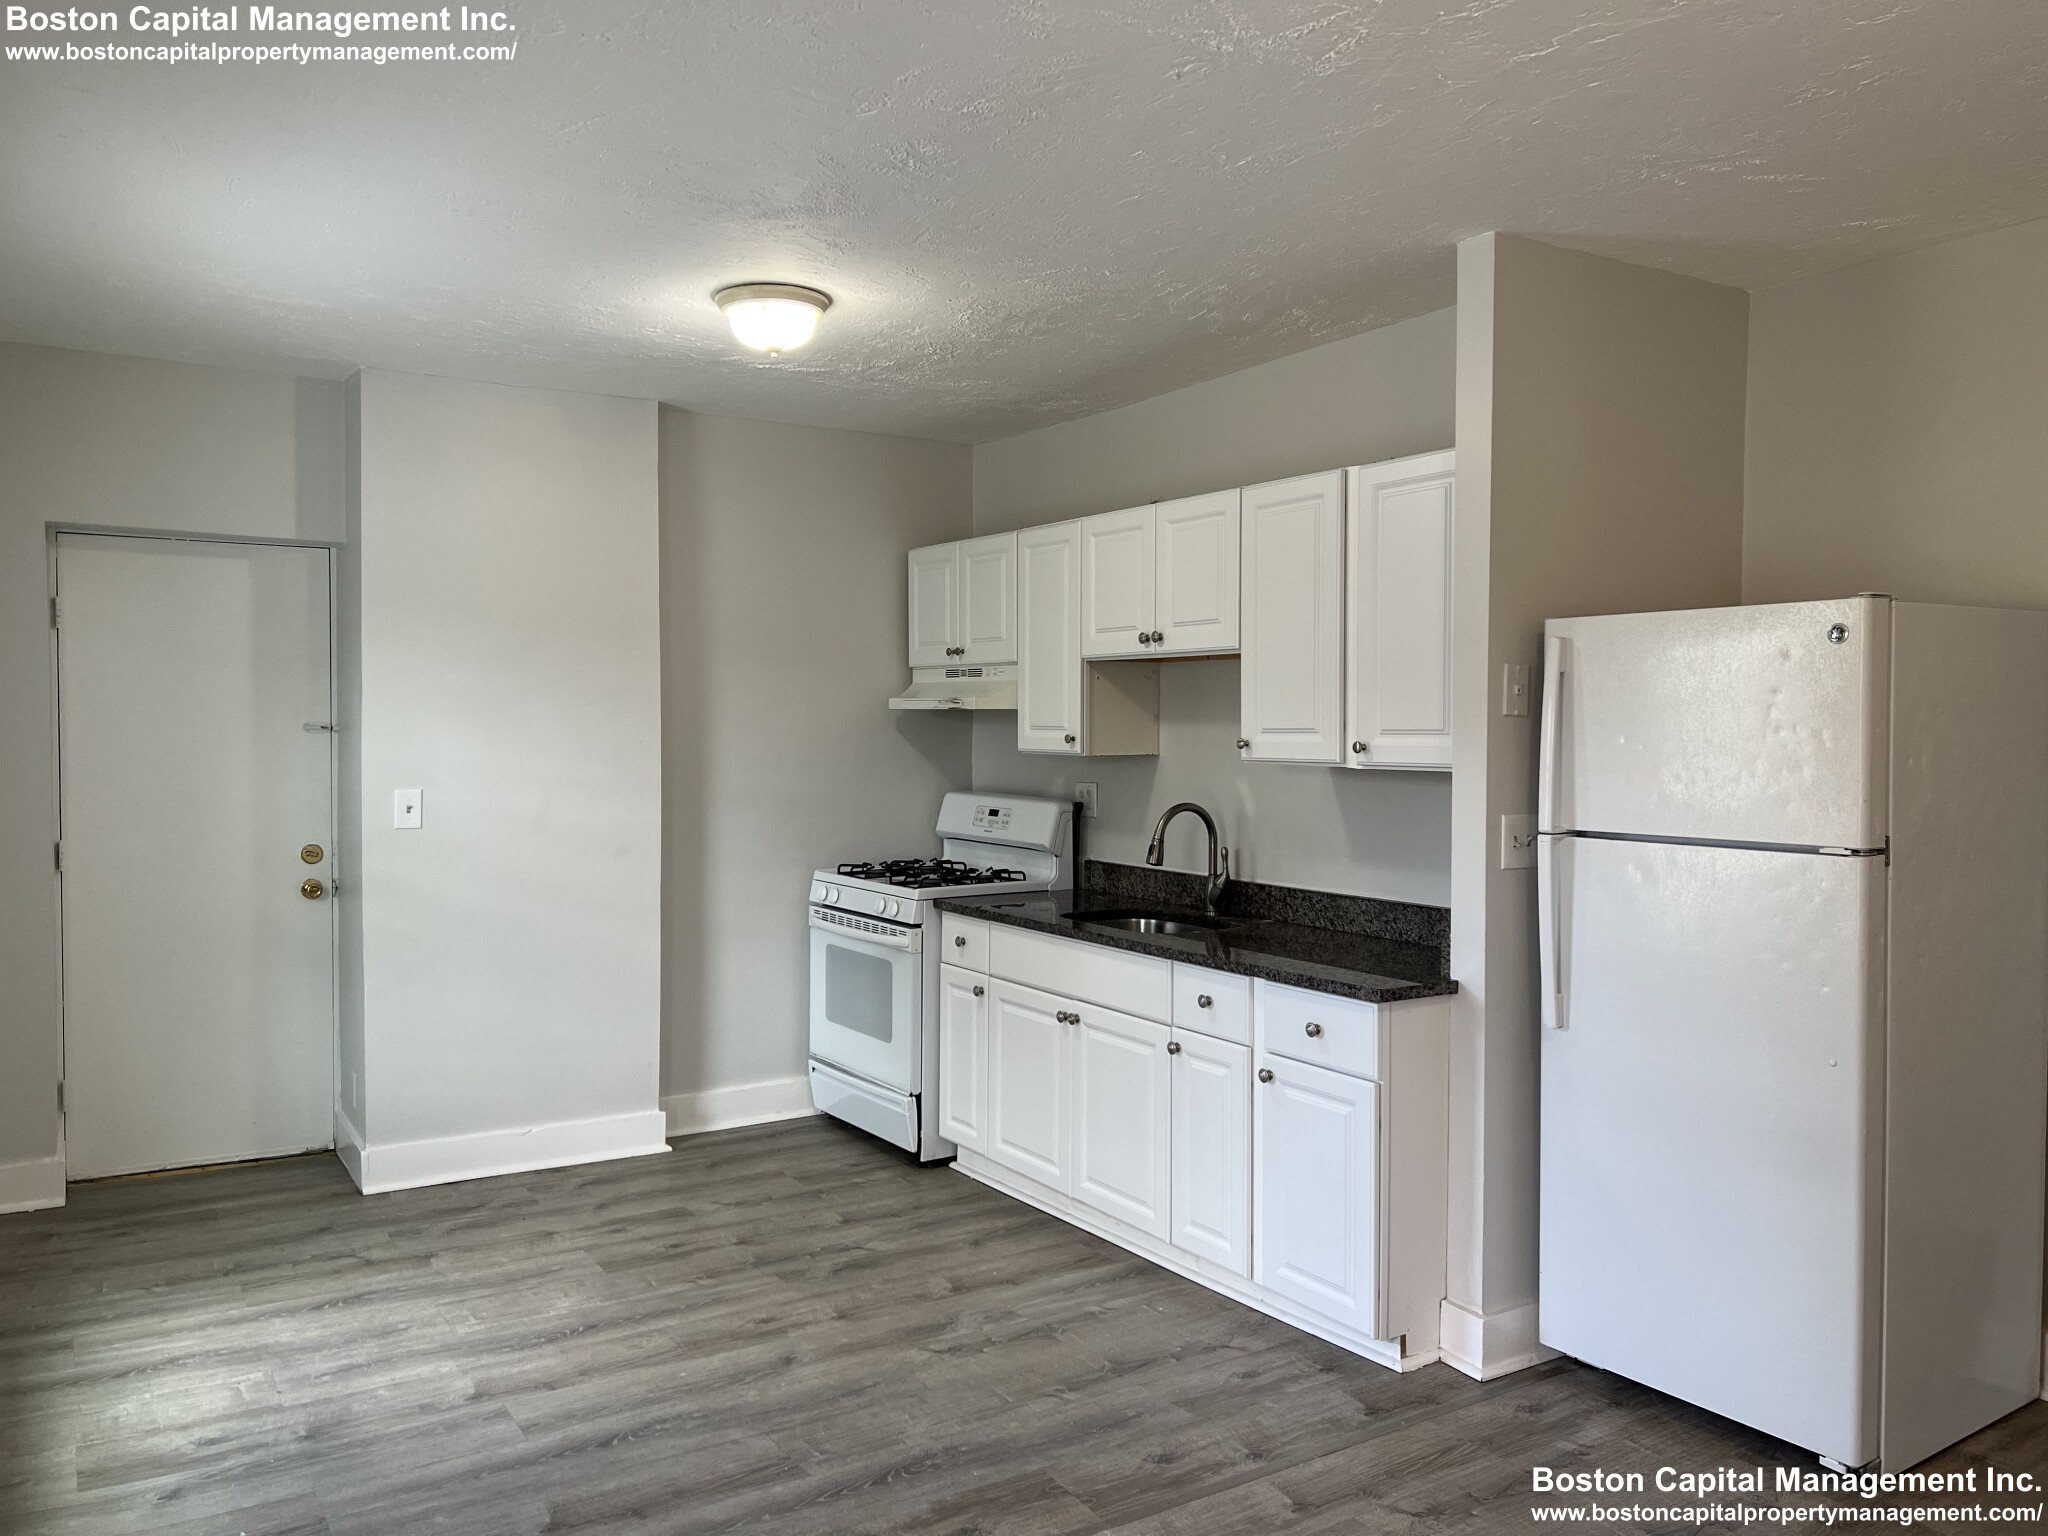 Photos of apartment on Argyle St.,Everett MA 02149